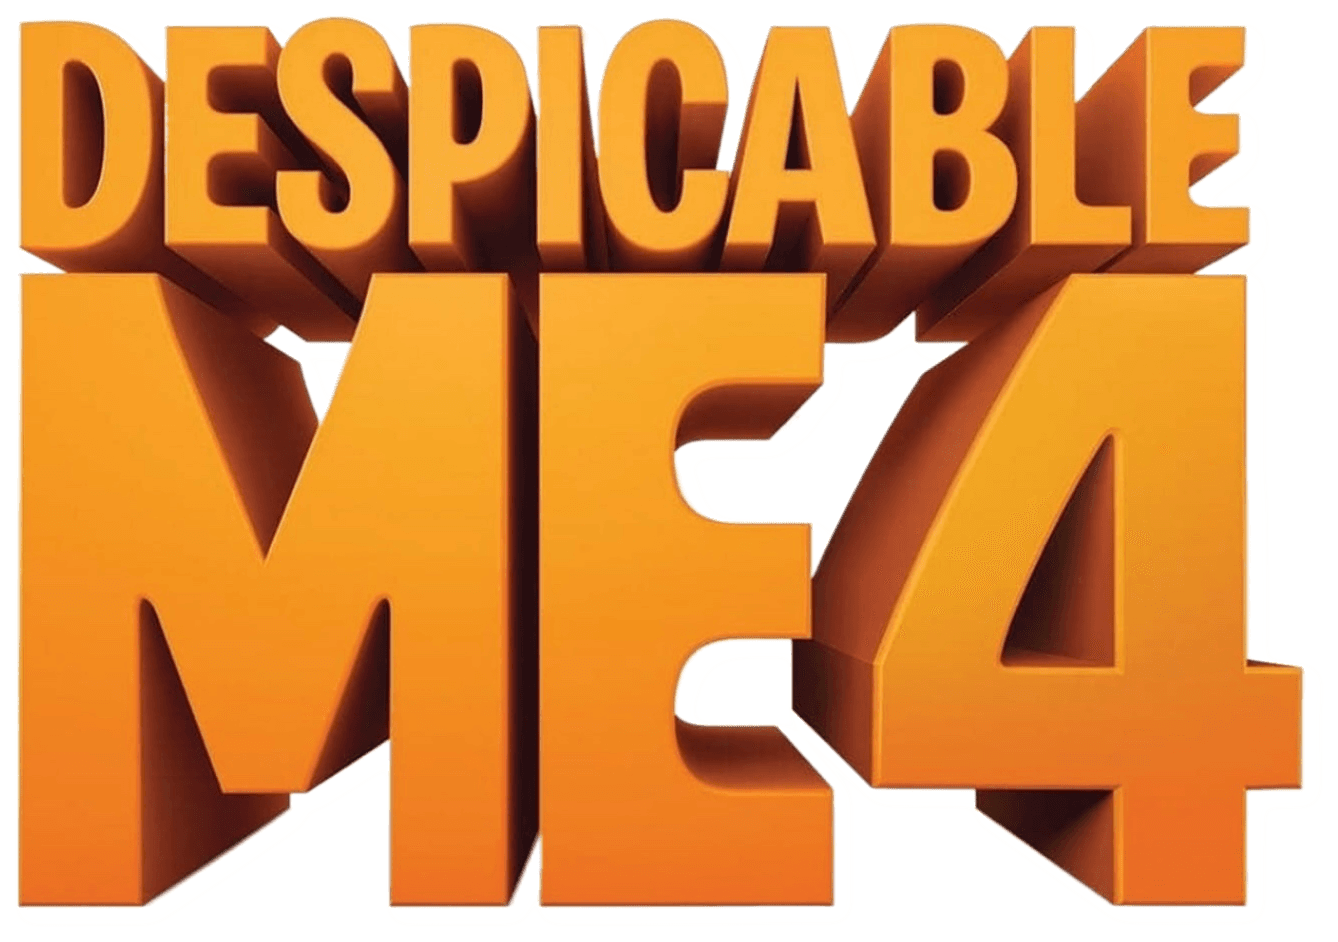 Despicable Me 4 logo